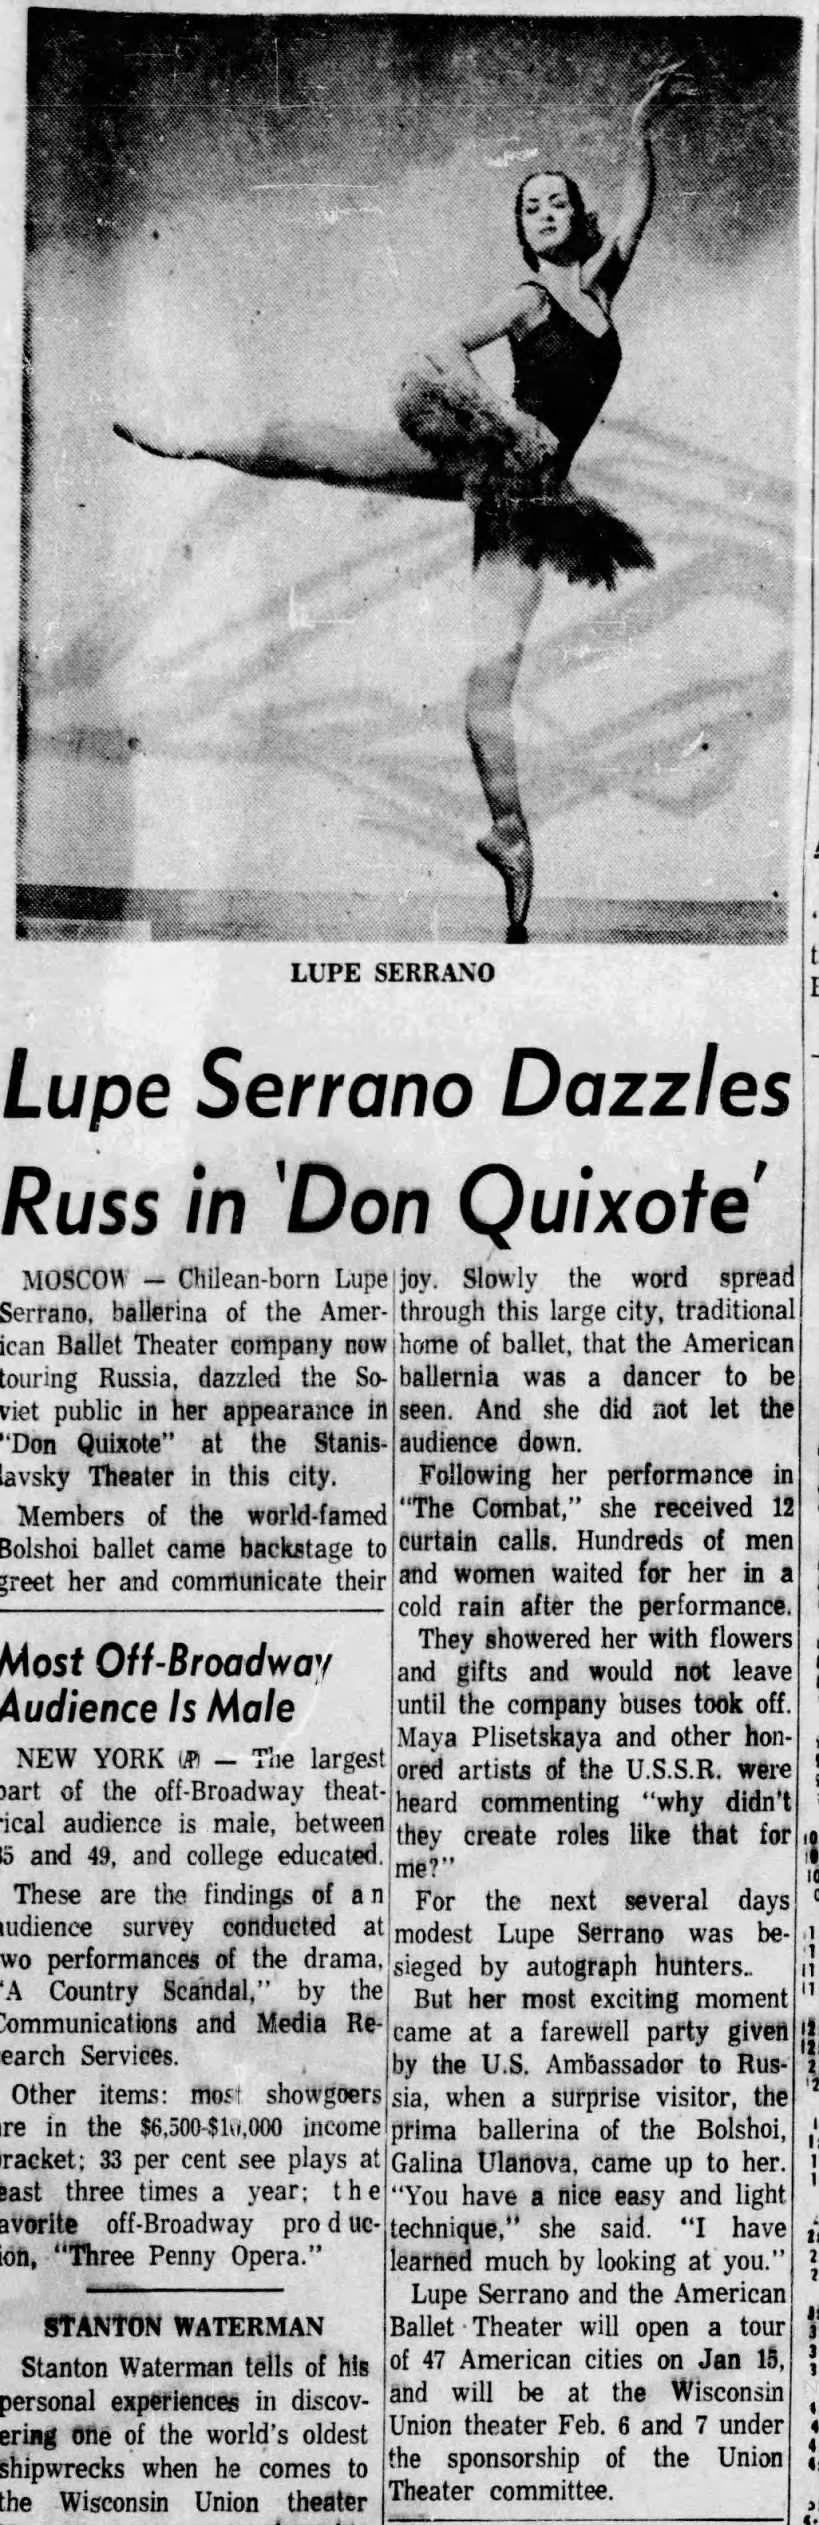 Lupe Serrano Dazzles Russ in 'Don Quixote'